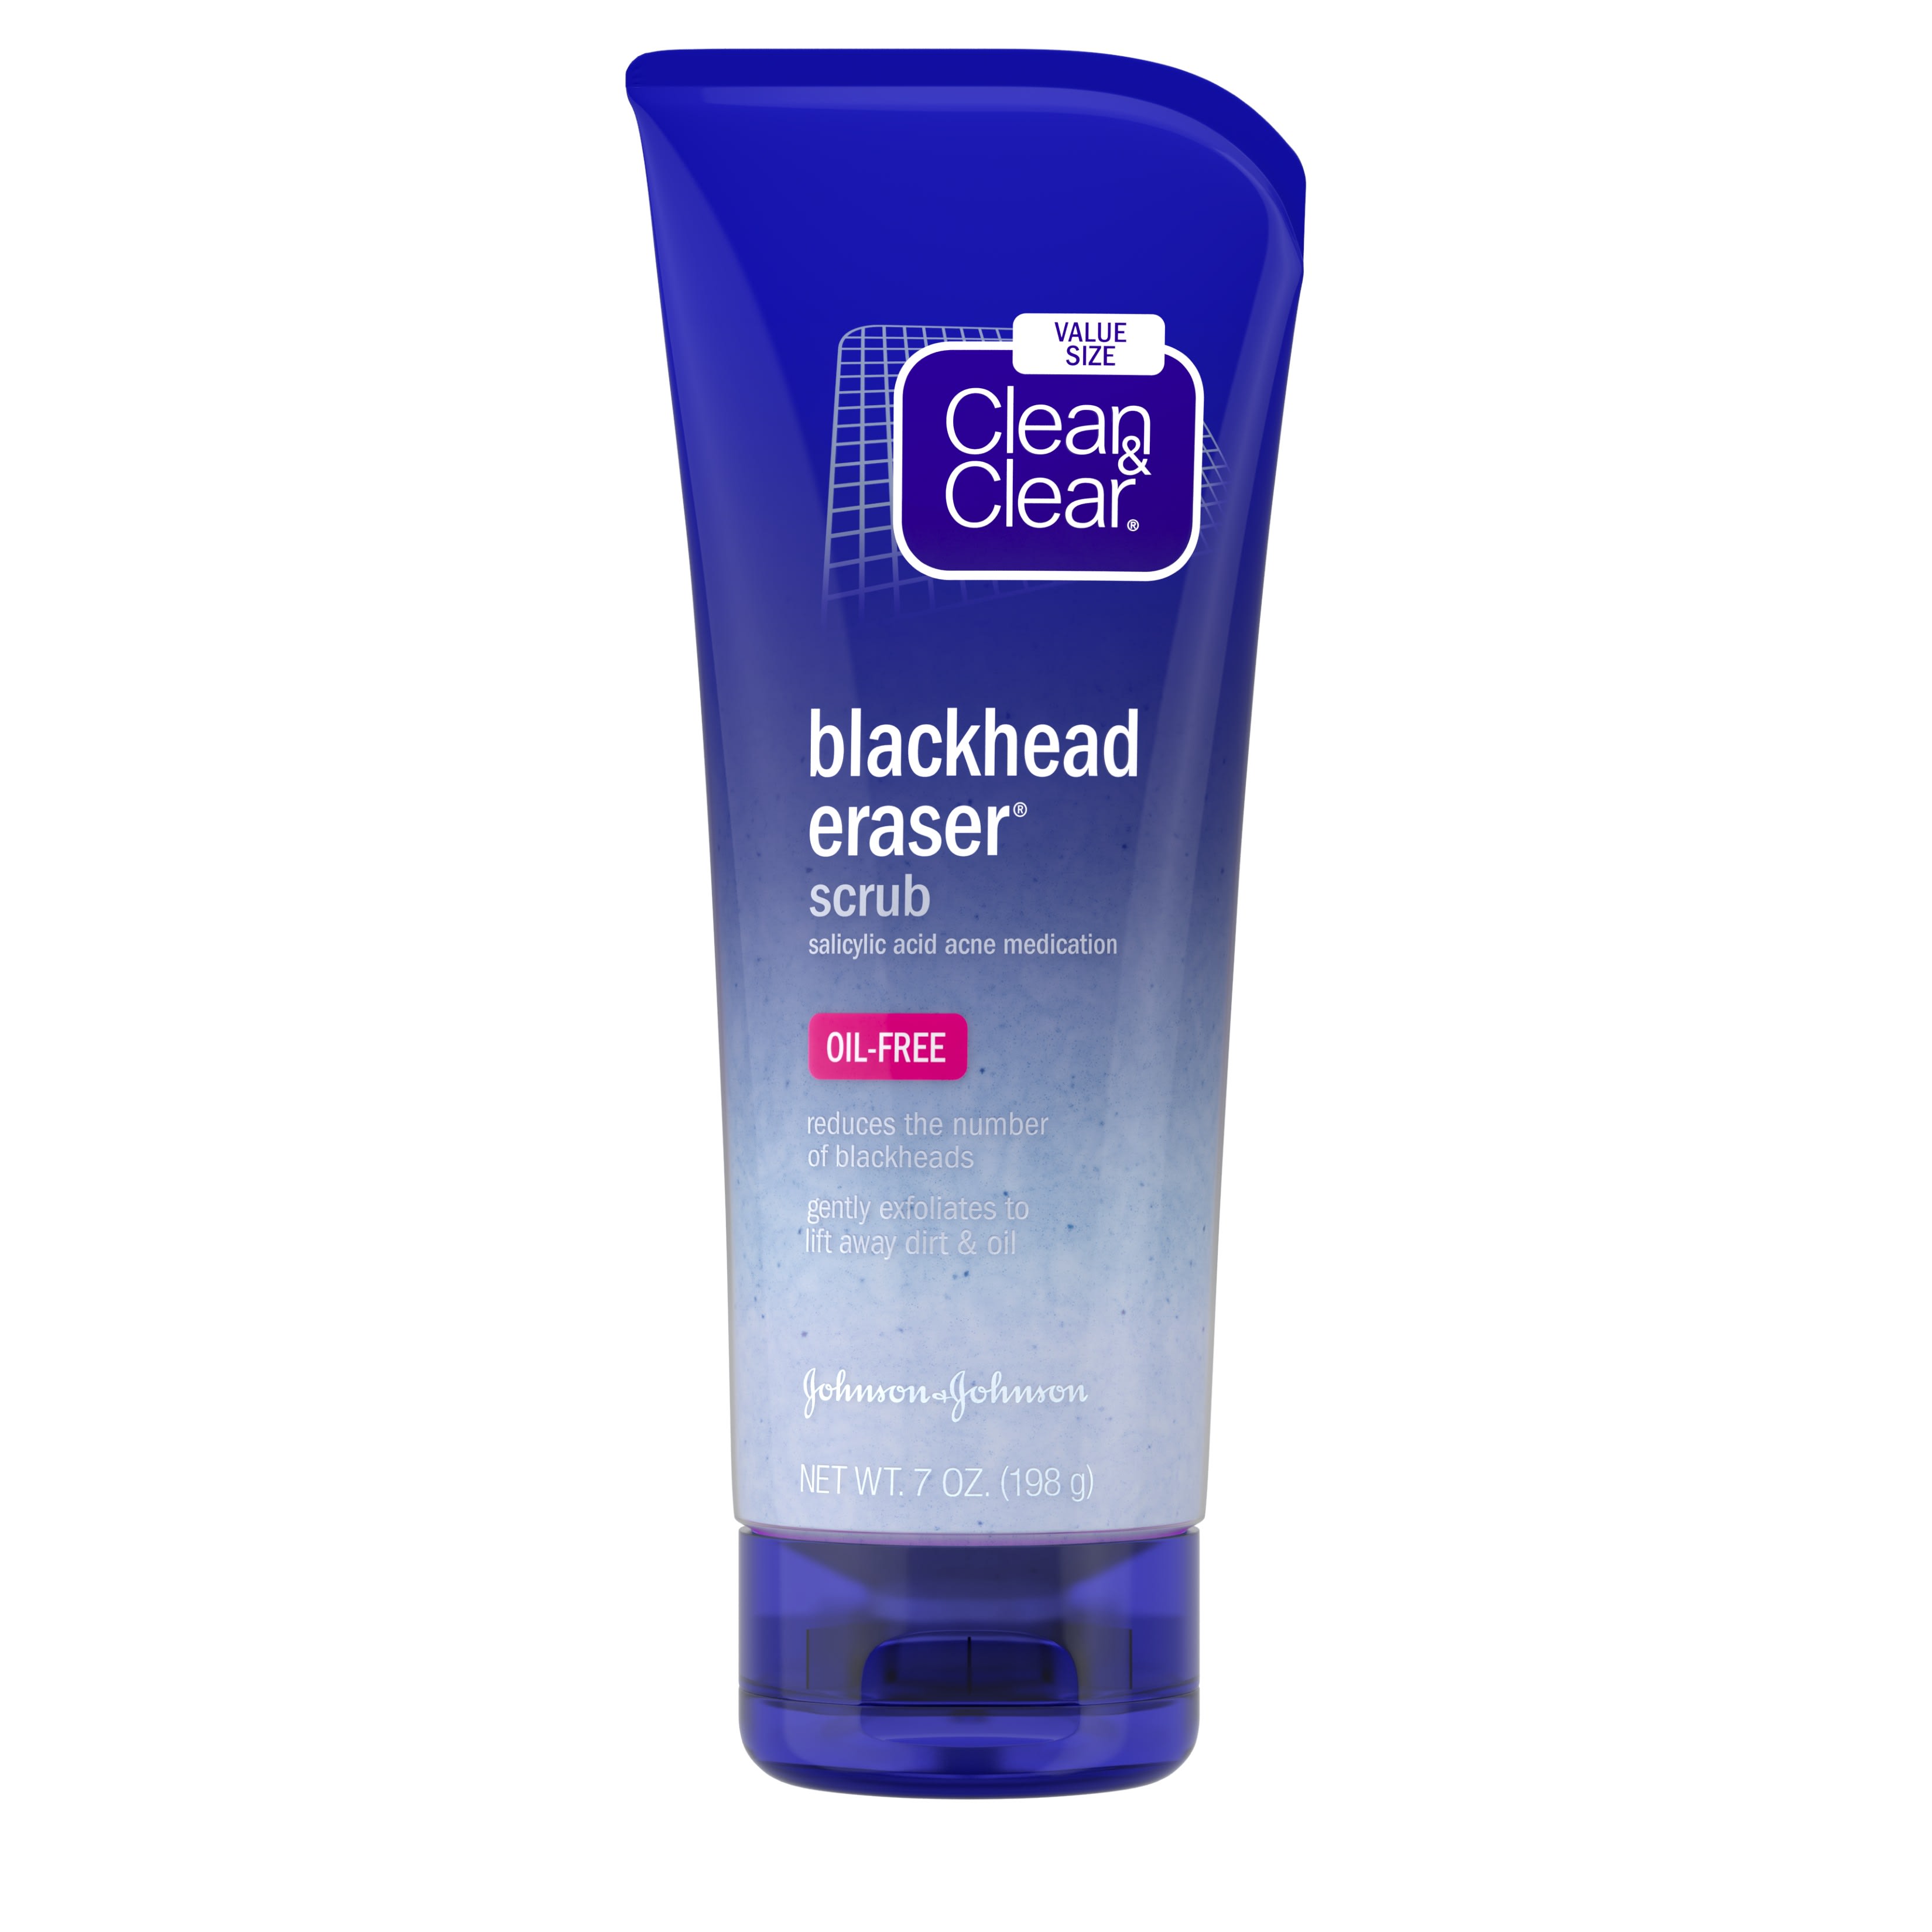 Clean & Clear Blackhead Eraser Facial Scrub with Salicylic Acid, 7 oz - image 1 of 4